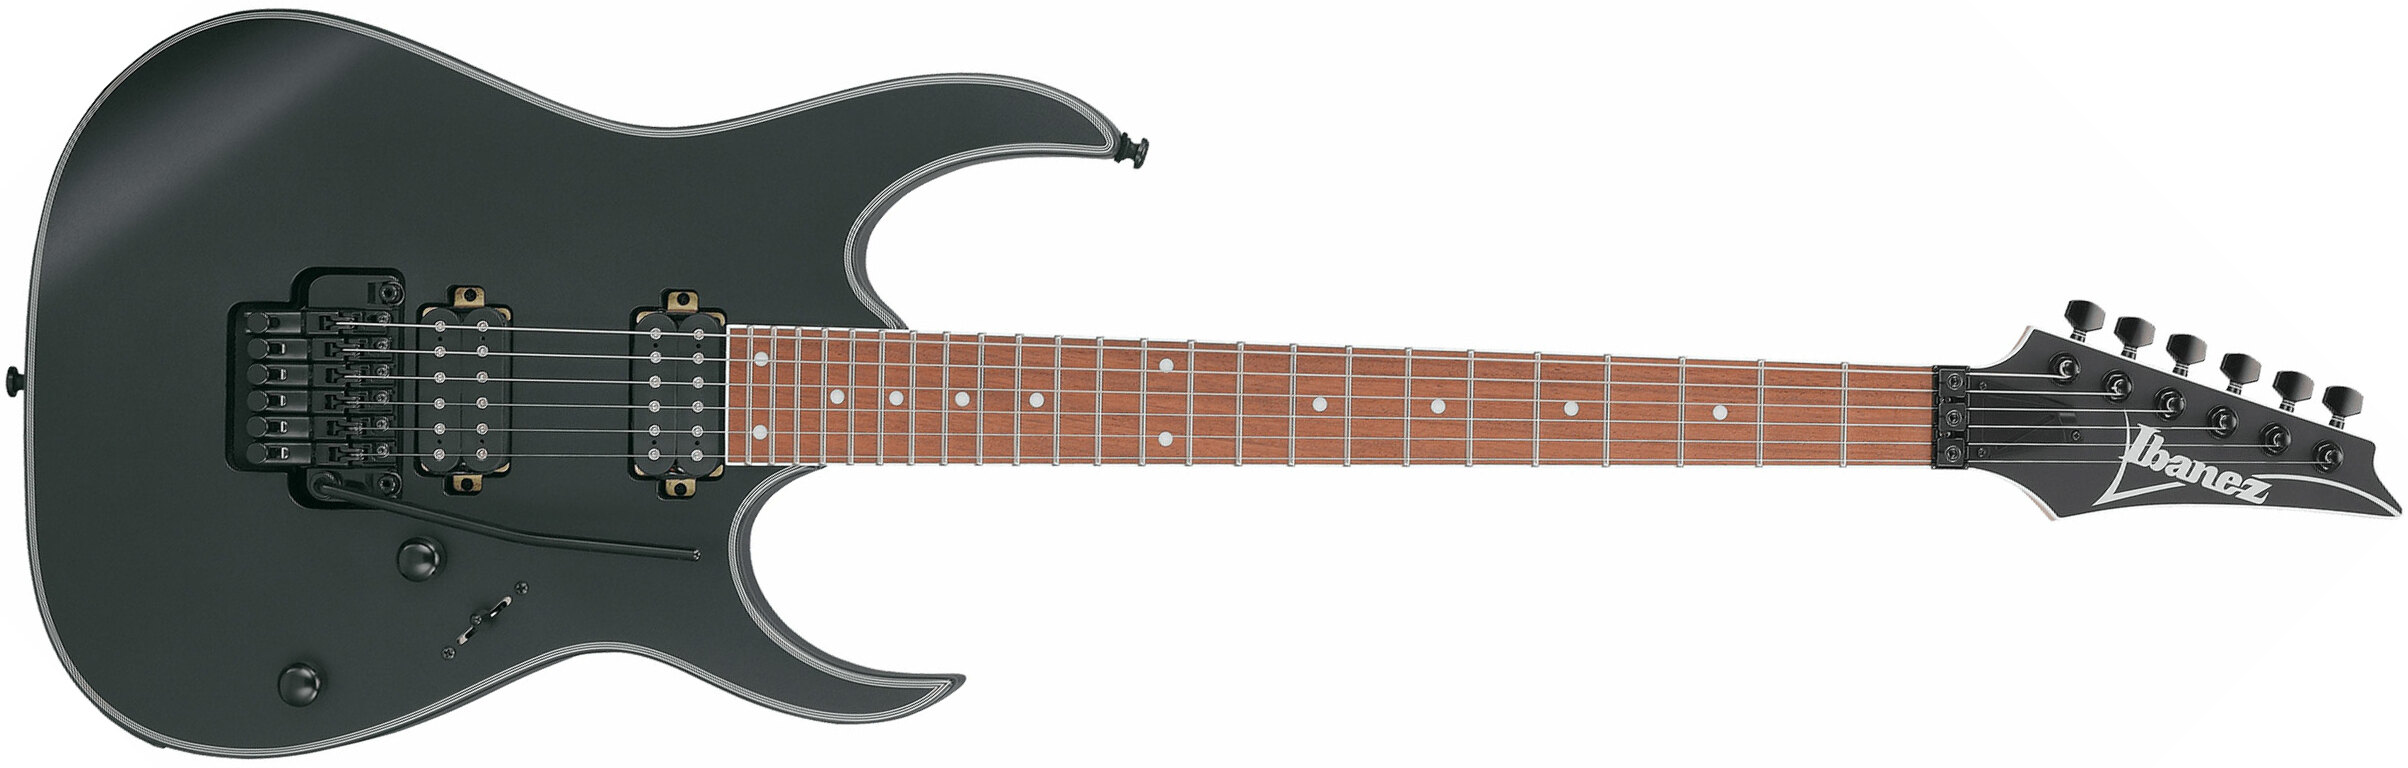 Ibanez Rg420ex Bkf Standard 2h Fr Jat - Black Flat - E-Gitarre in Str-Form - Main picture